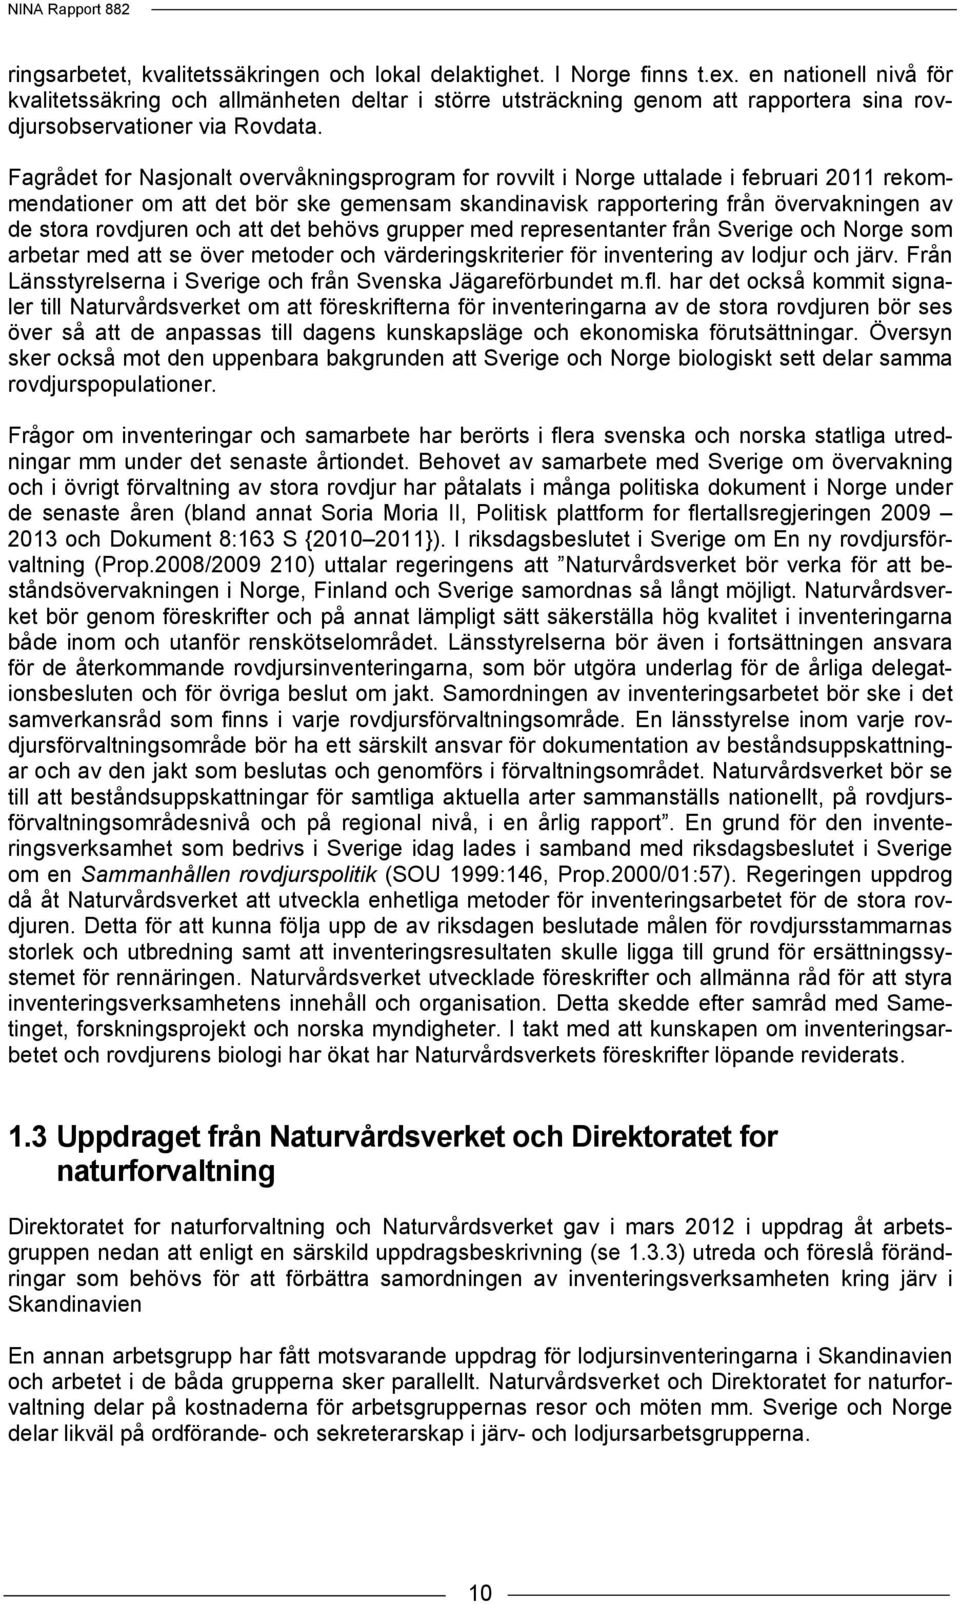 Fagrådet for Nasjonalt overvåkningsprogram for rovvilt i Norge uttalade i februari 2011 rekommendationer om att det bör ske gemensam skandinavisk rapportering från övervakningen av de stora rovdjuren